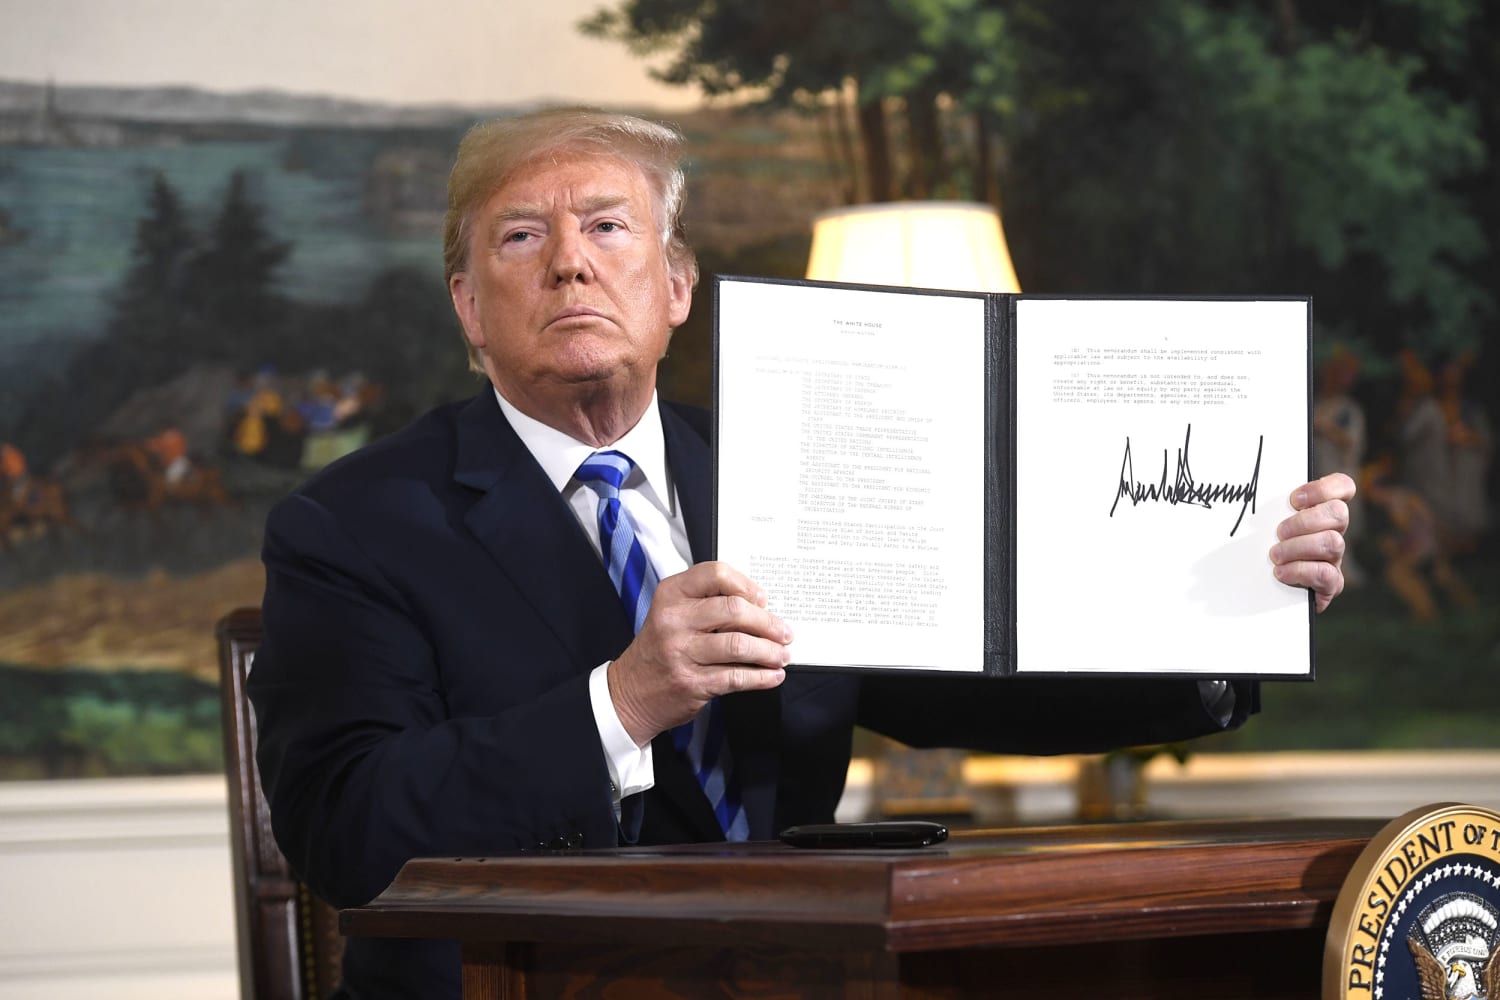 Trump deve anunciar retirada do acordo nuclear iraniano